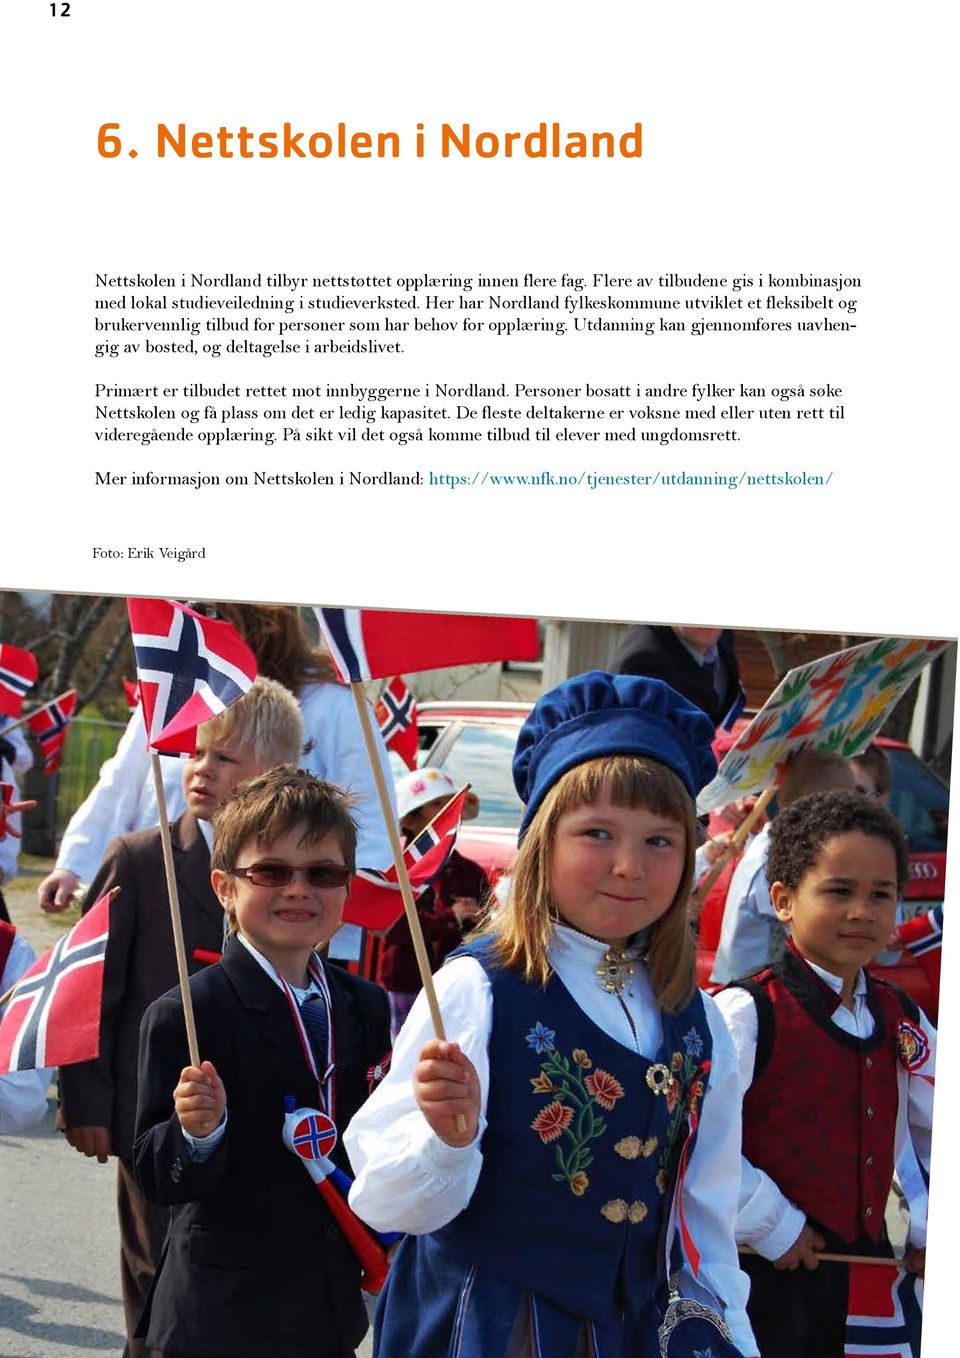 Utdanning kan gjennomføres uavhengig av bosted, og deltagelse i arbeidslivet. Primært er tilbudet rettet mot innbyggerne i Nordland.